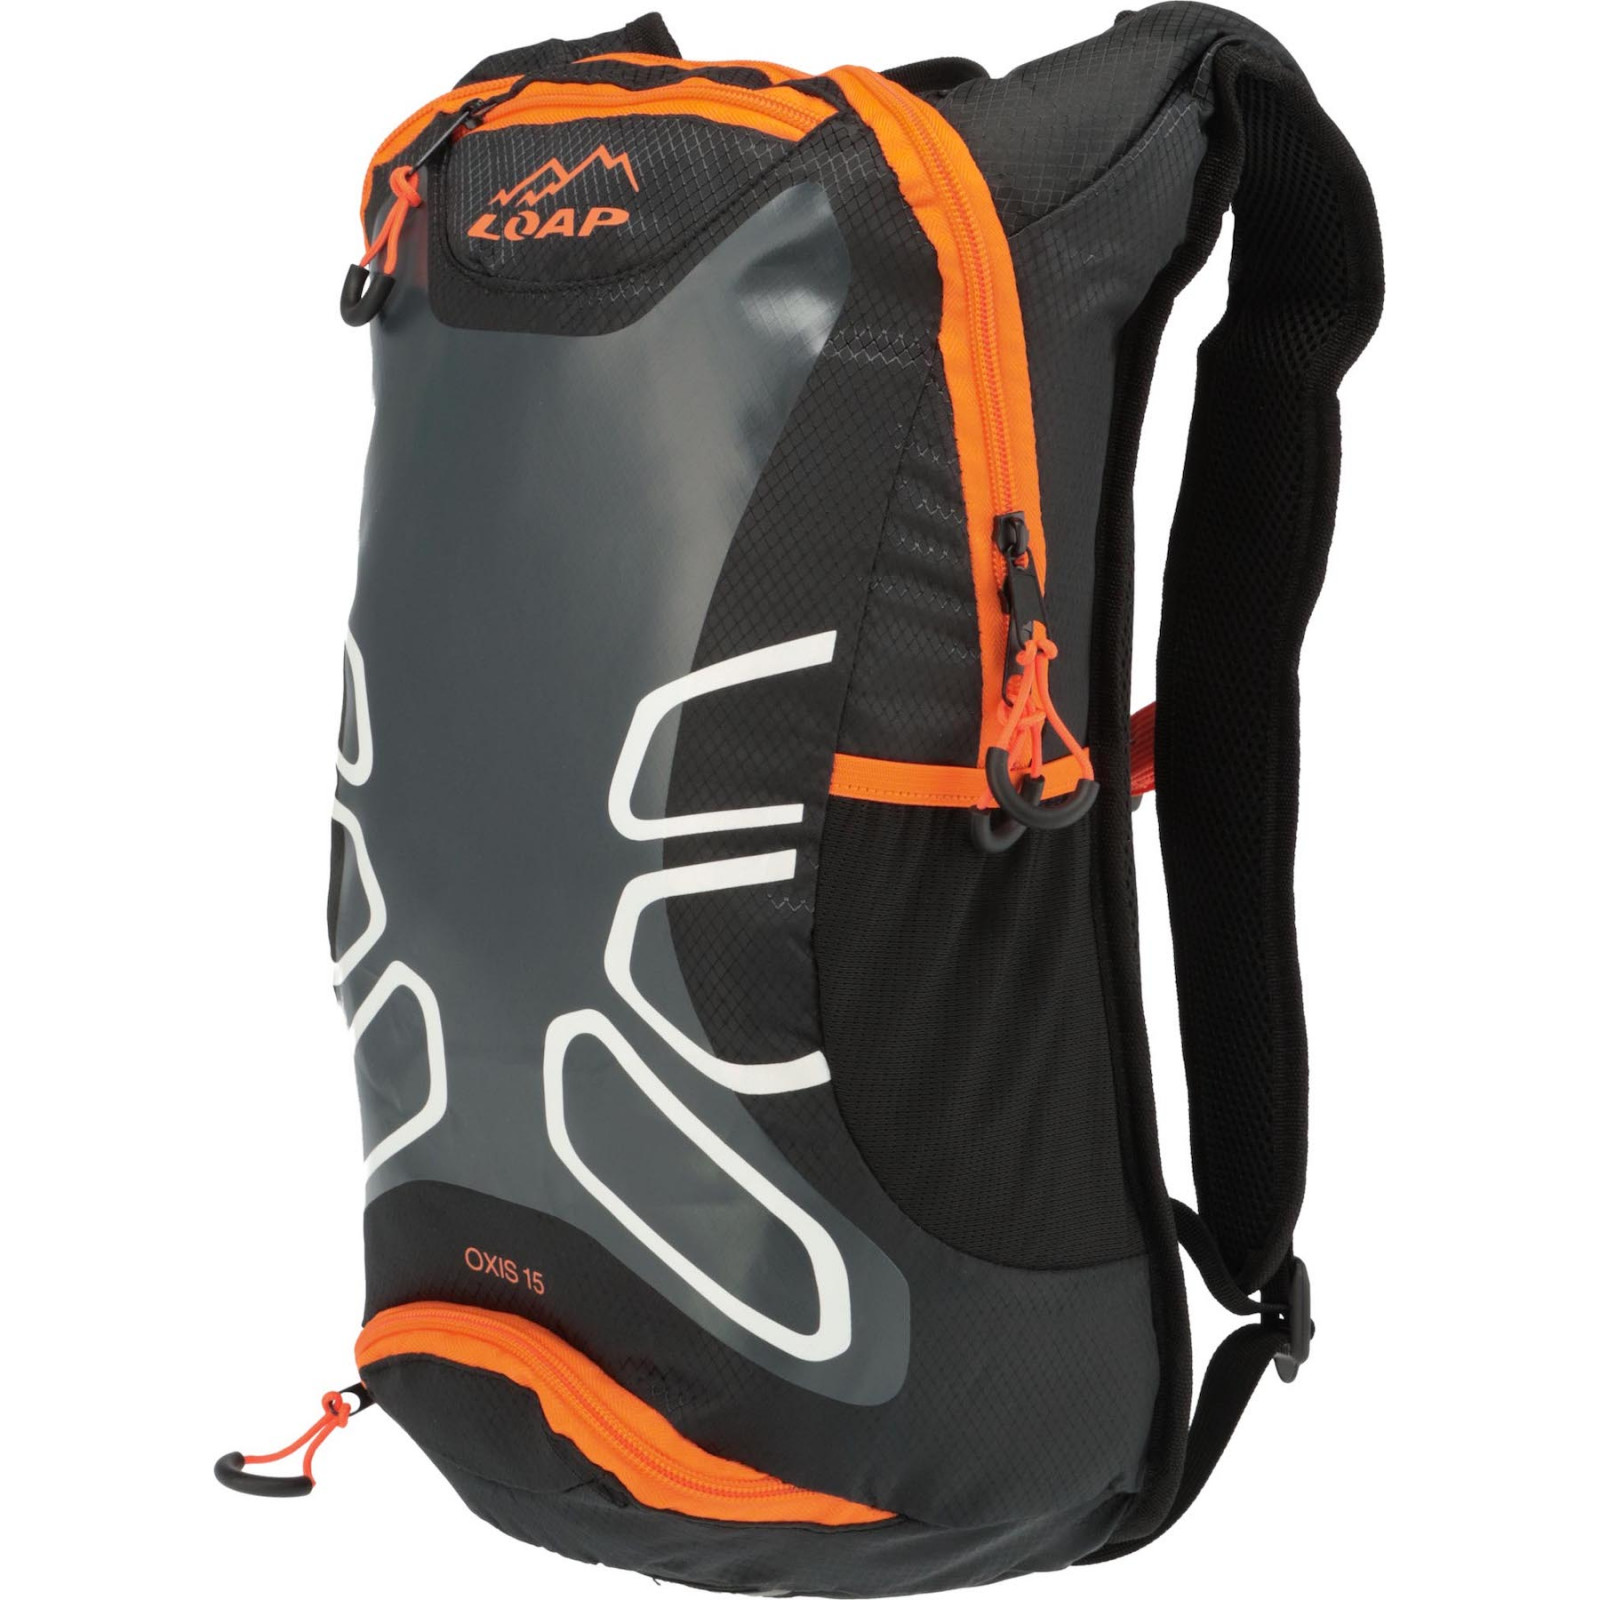 Cyklistický batoh Loap Oxis 15 Barva: černá/oranžová